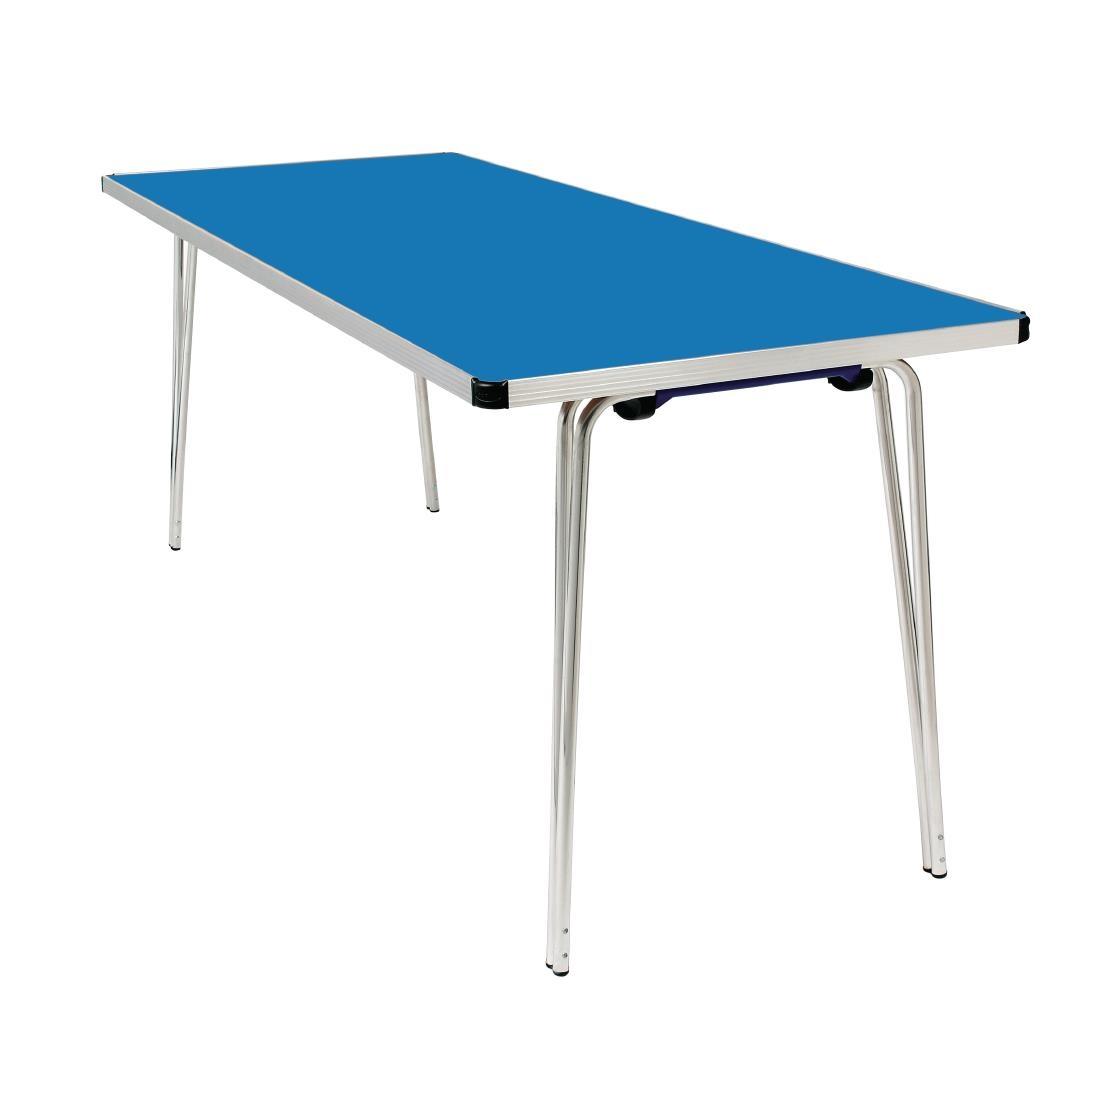 Gopak Contour Folding Table Blue 6ft - DM944  - 1